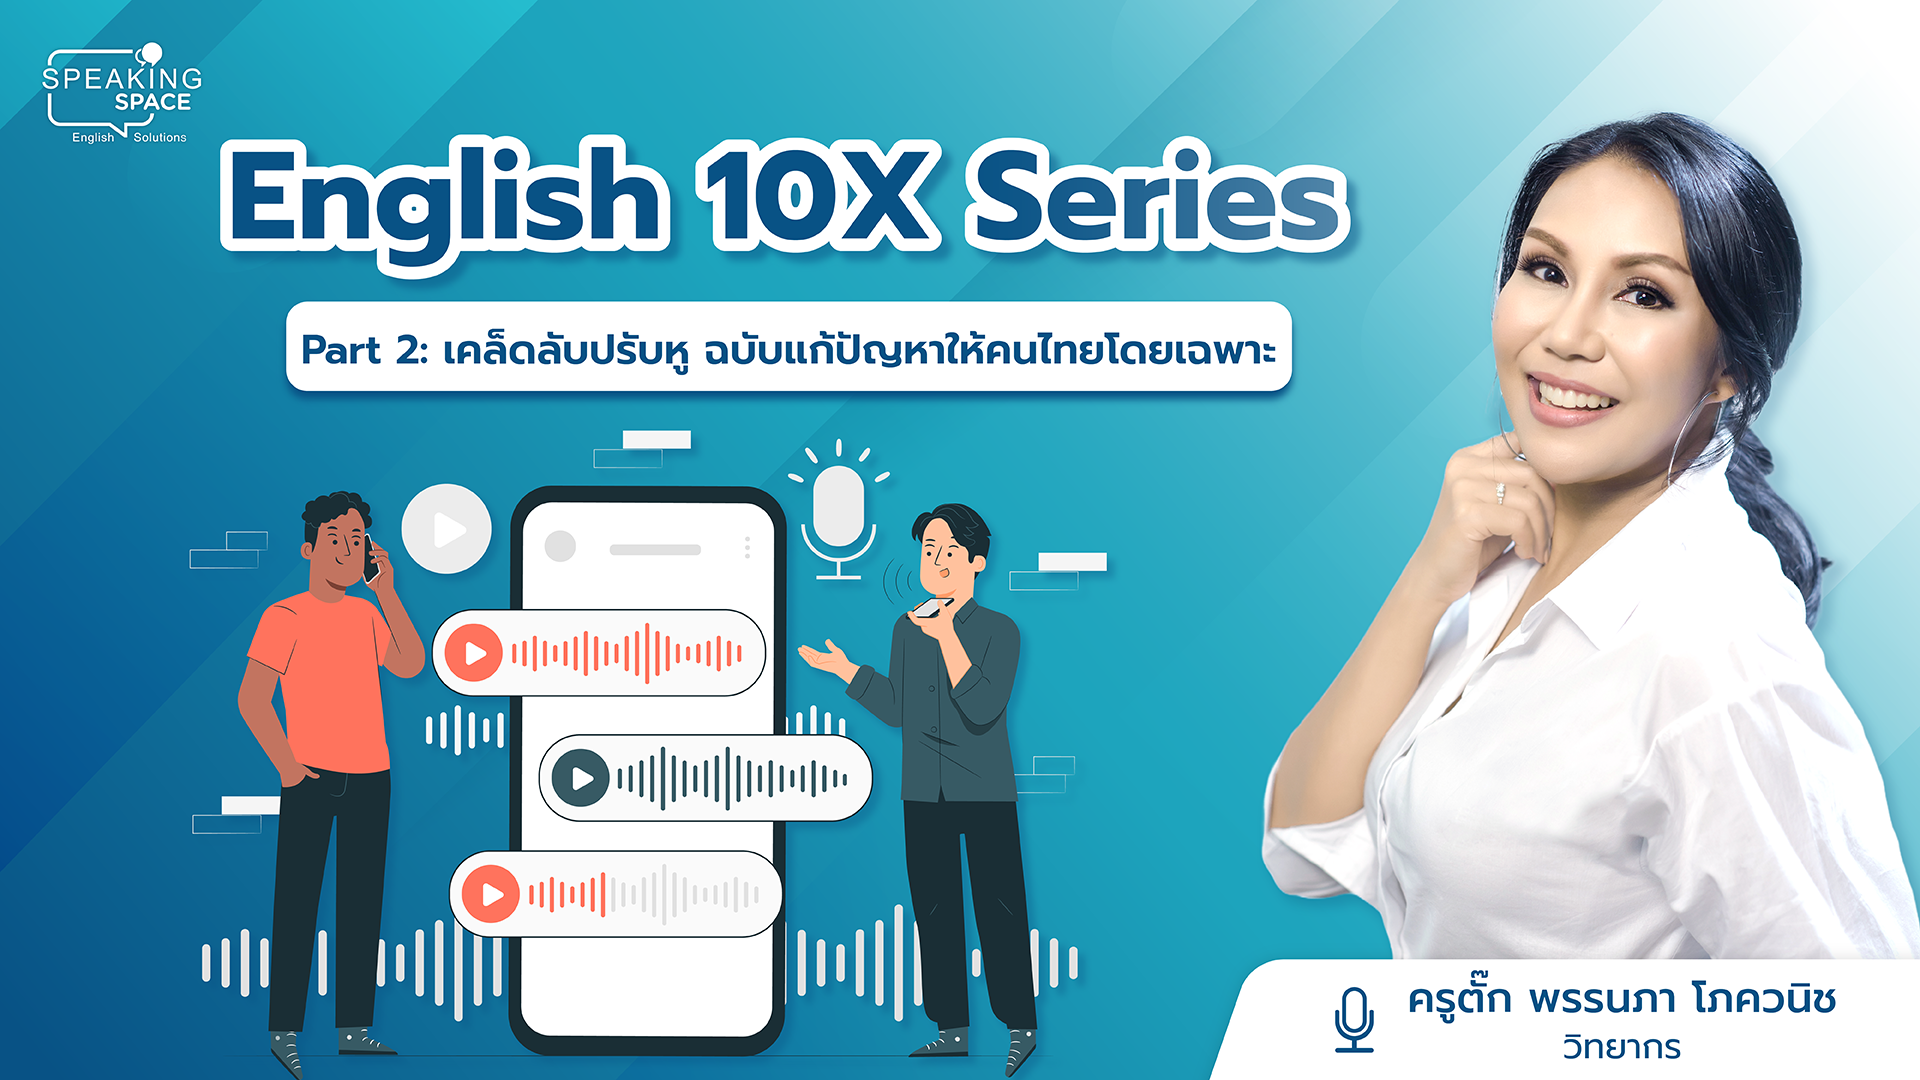 English 10X Part 2: เคล็ดลับปรับหู ฉบับแก้ปัญหาให้คนไทยโดยเฉพาะ